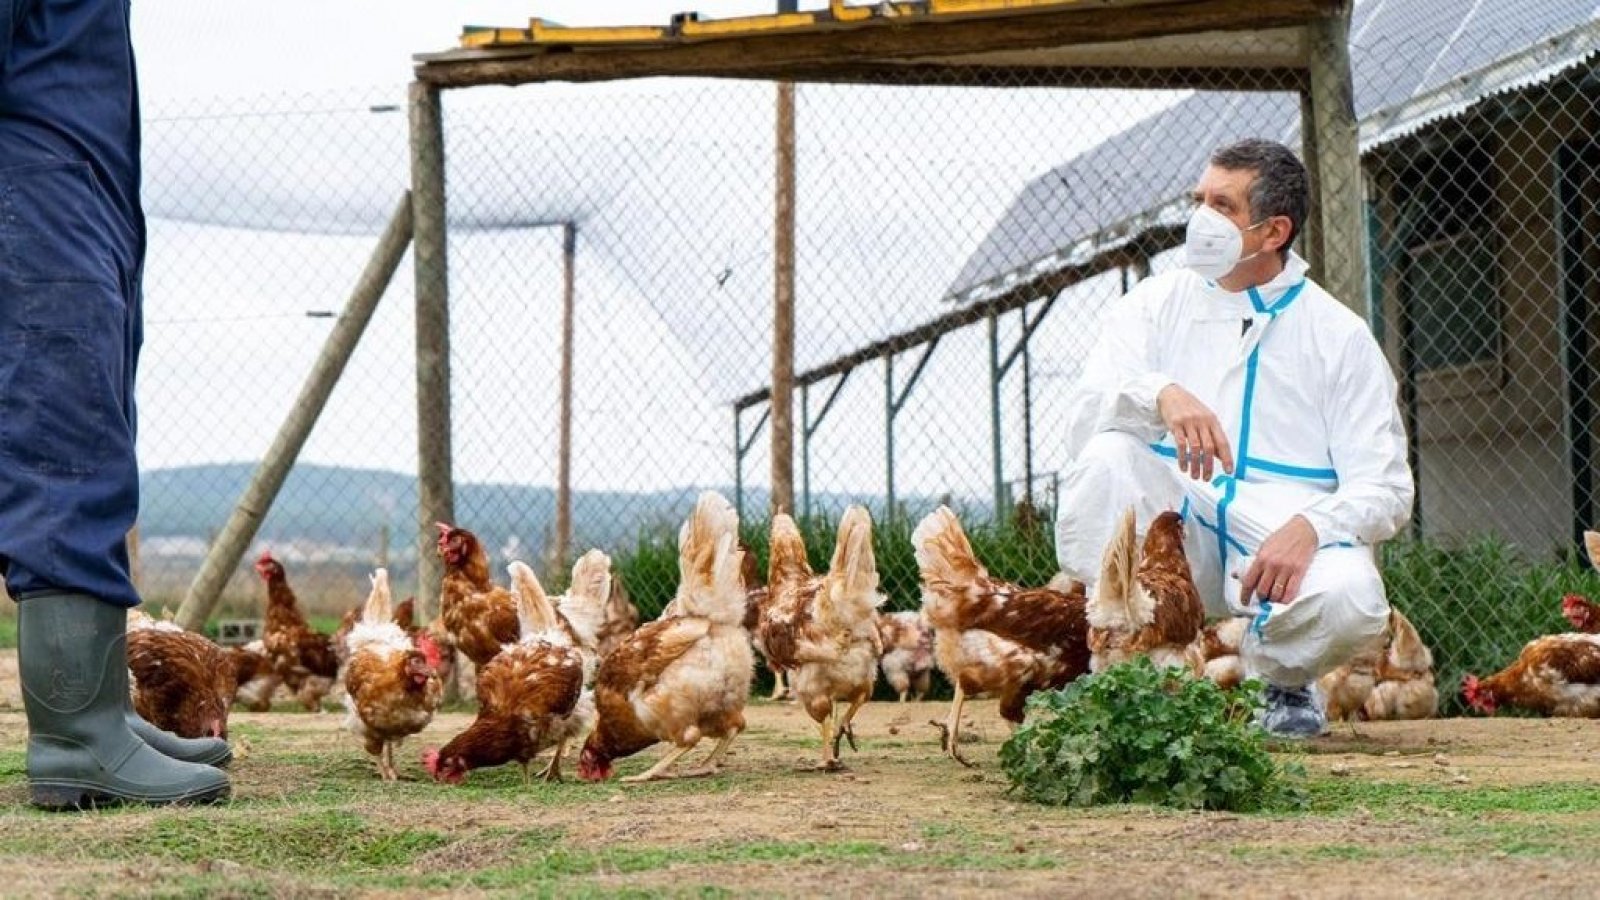 Investigador analizando aves con gripe aviar.